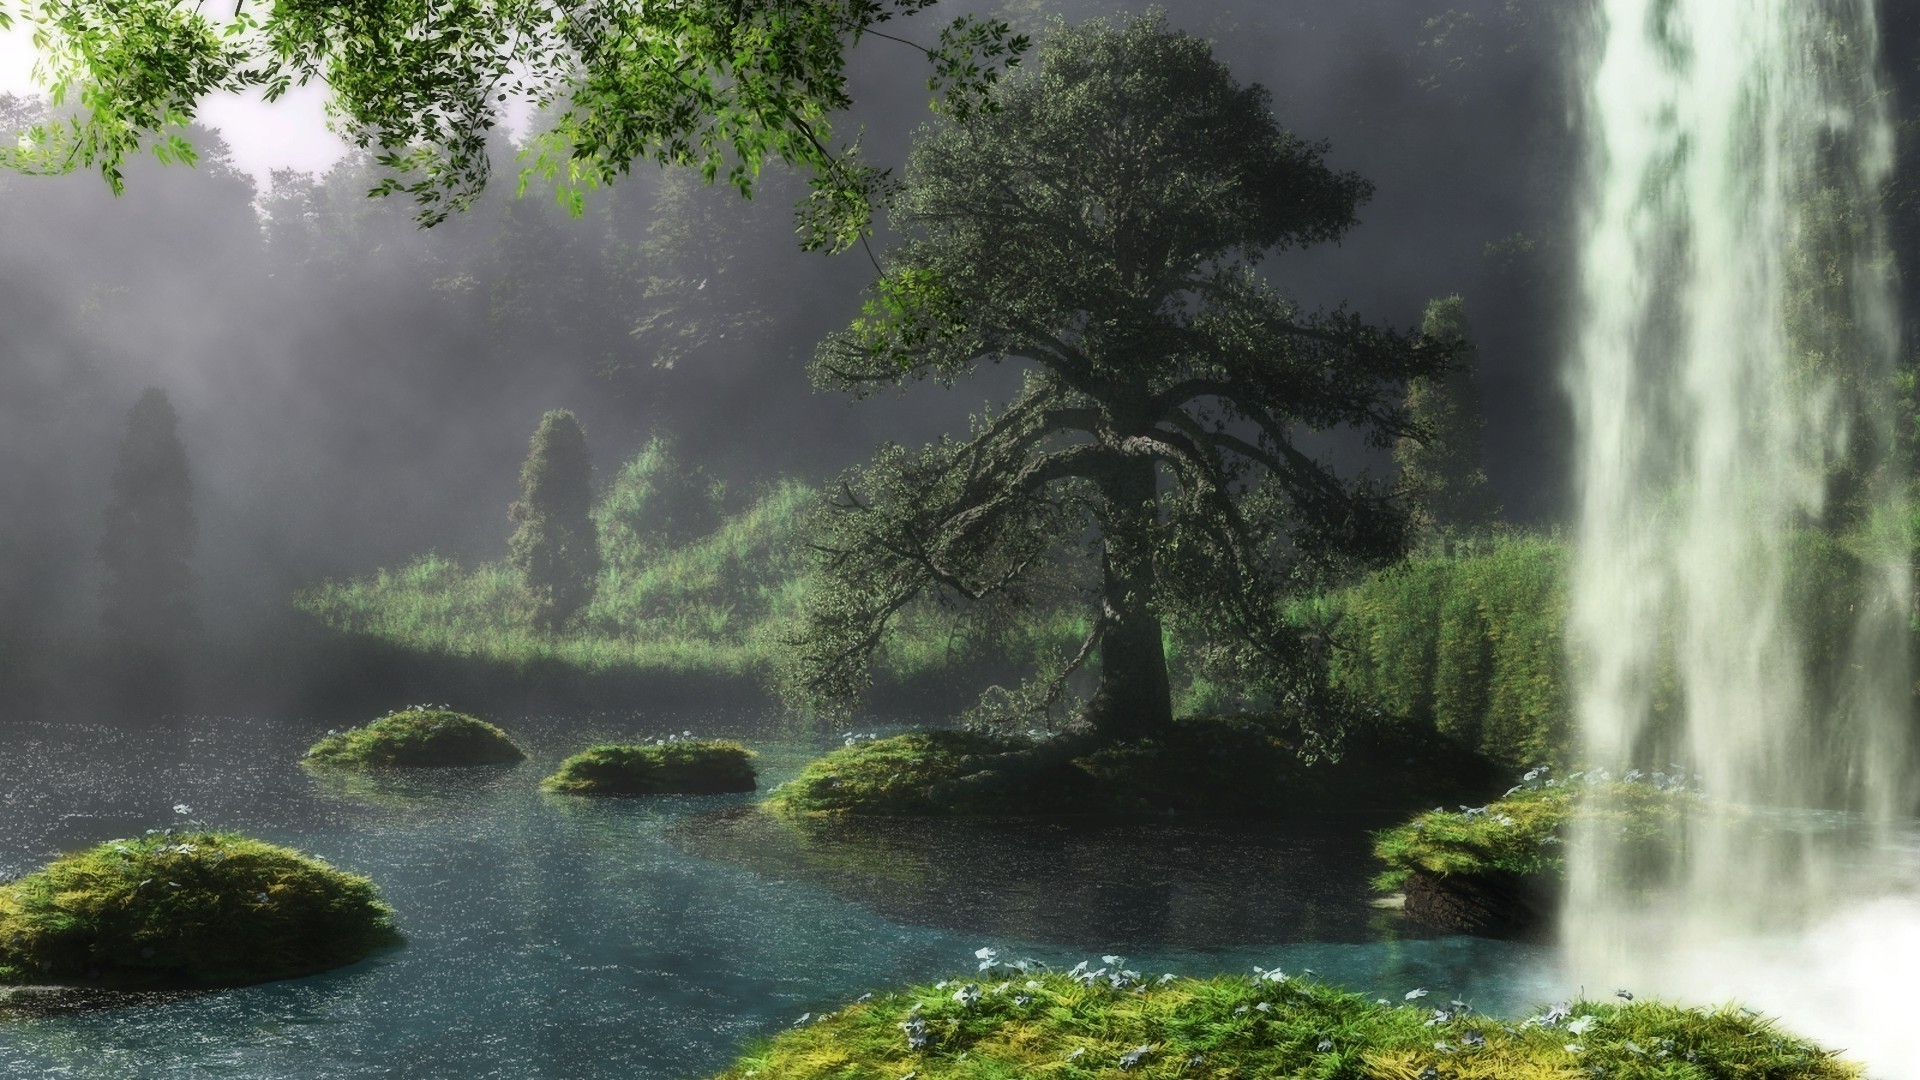 водопады воды дерево природа древесины на открытом воздухе река пышные водопад парк лист путешествия пейзаж лето осень